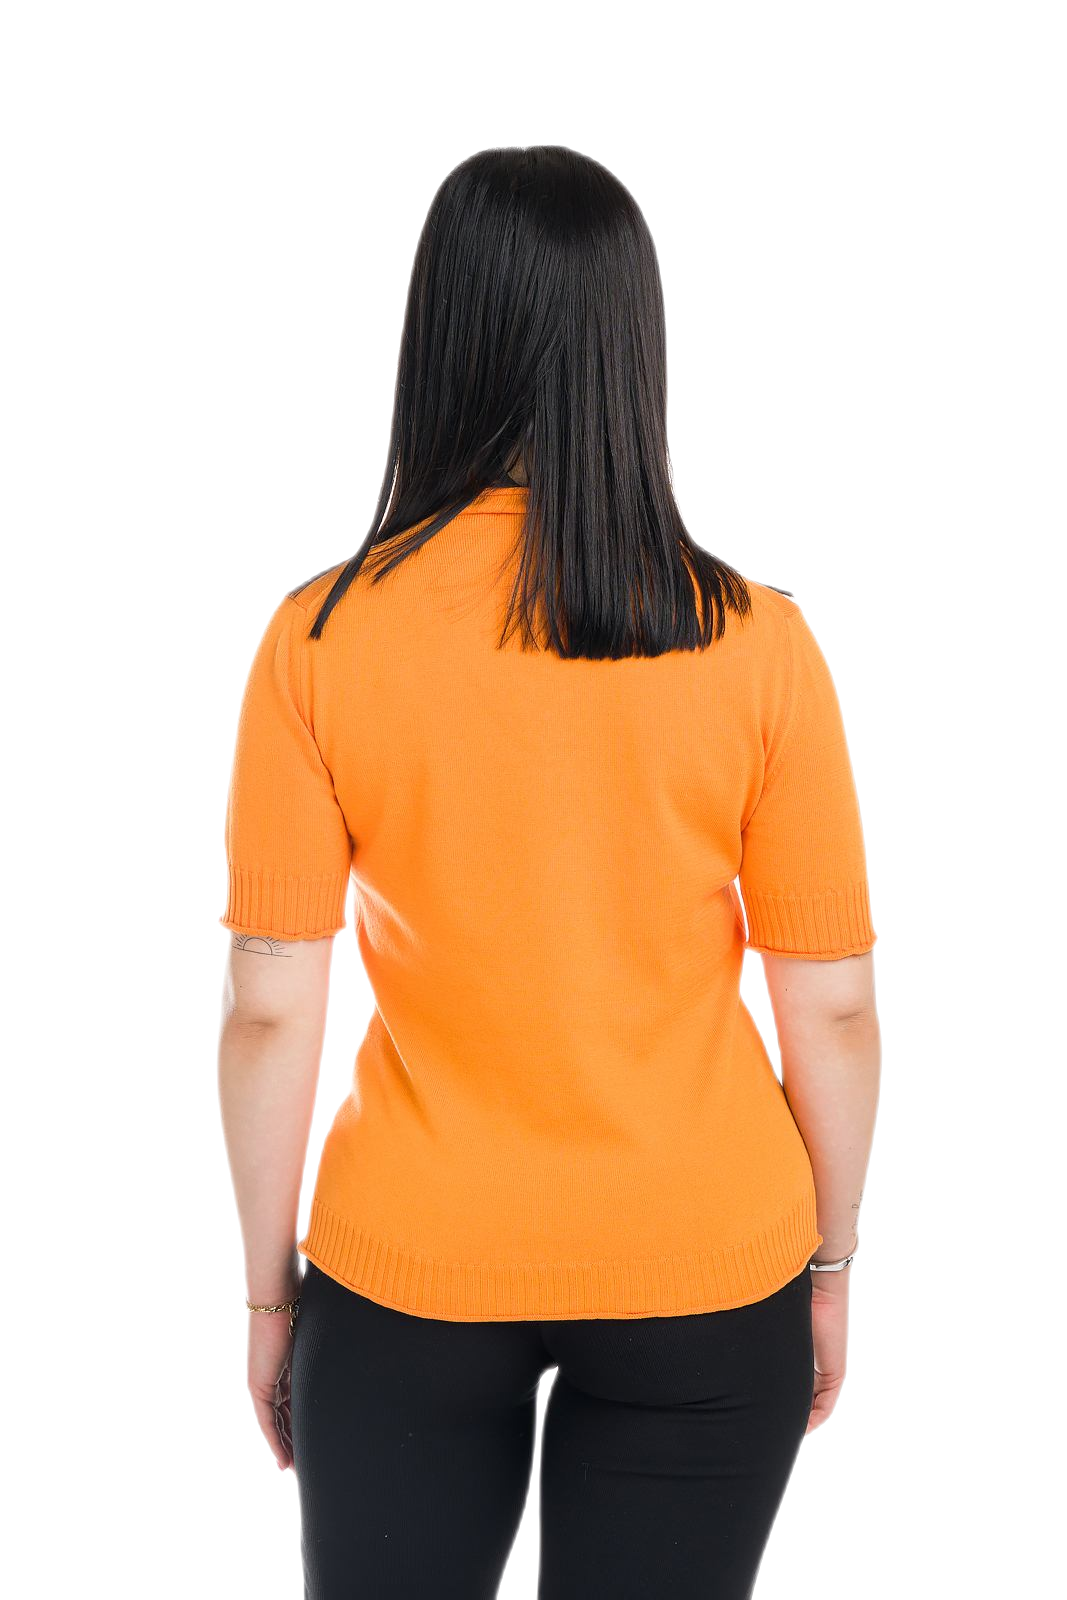 retro maglietta donna a manica corta estiva in cotone arancione